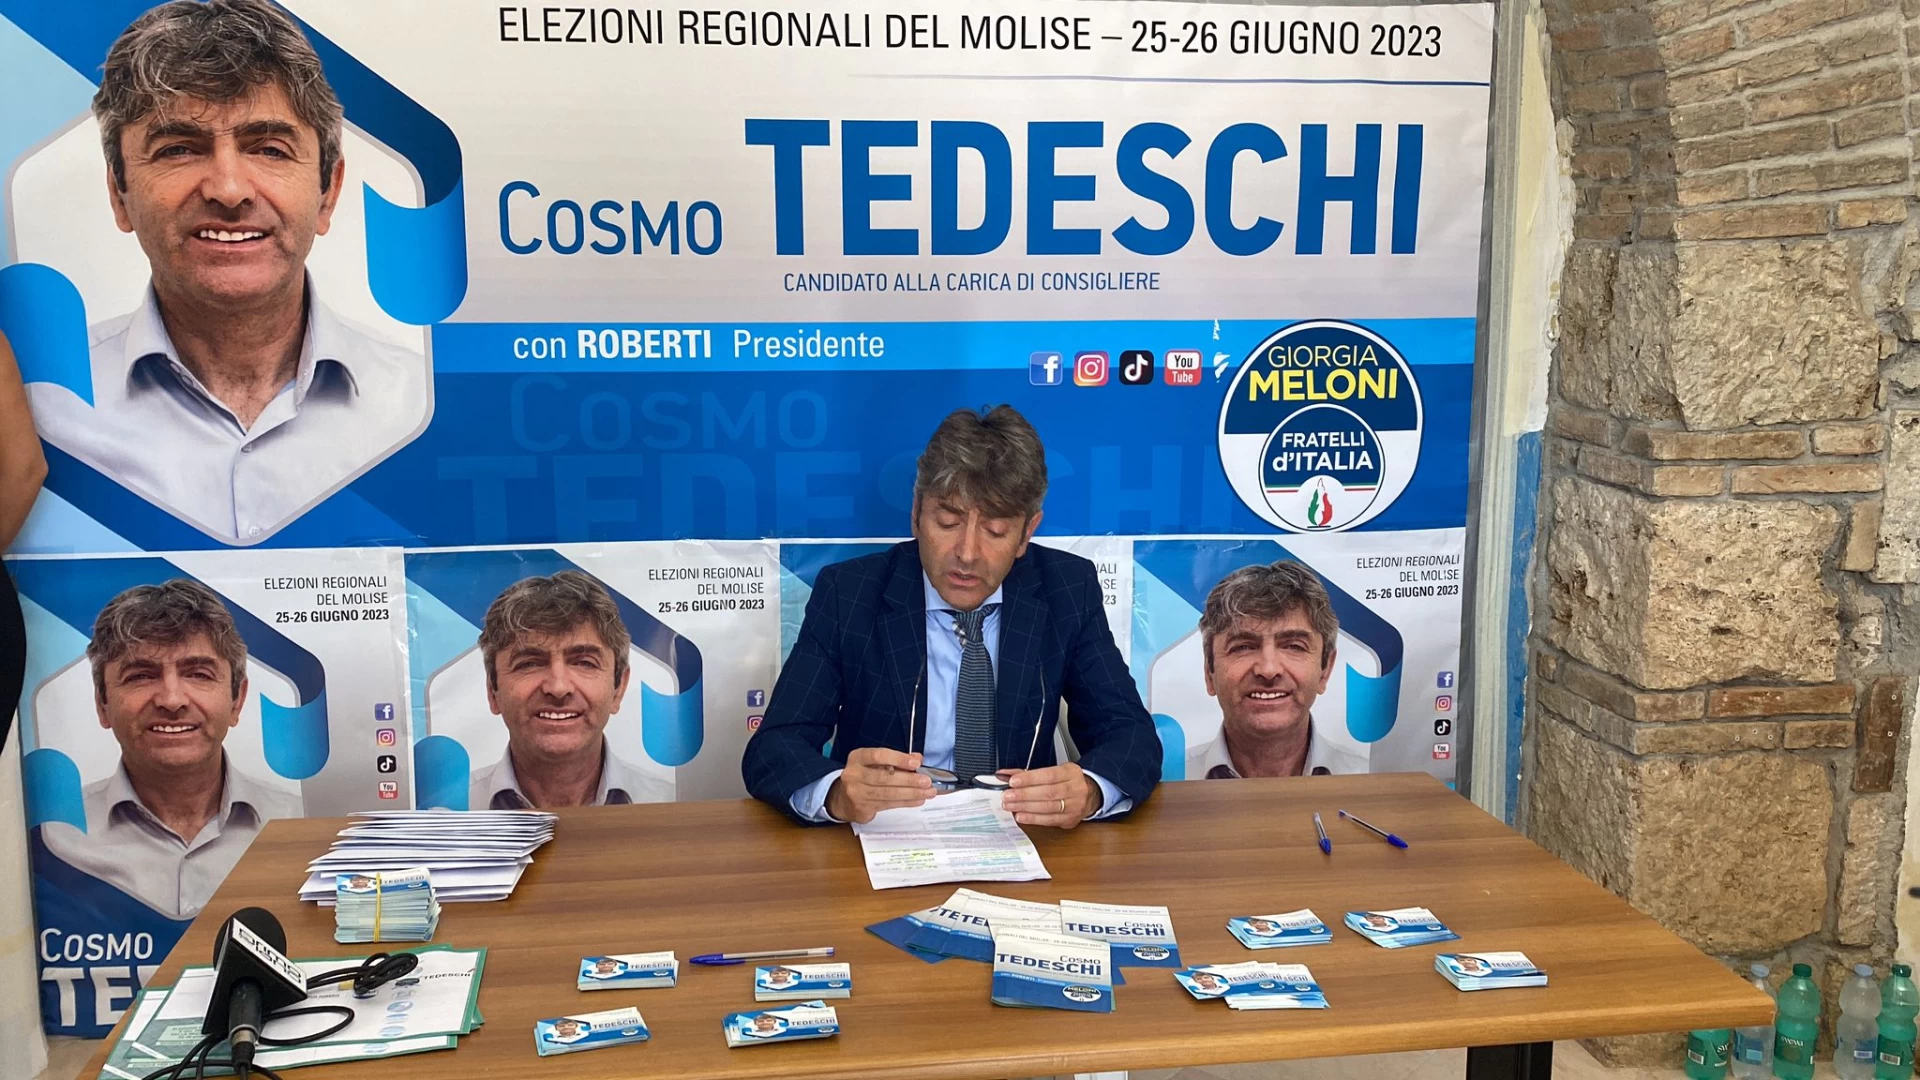 Spazio elettorale: Cosmo Tedeschi lancia la sua sfida chiamata “Molise”. Questa mattina l’incontro con la stampa. “Campagna elettorale lunga ed estenuante”.